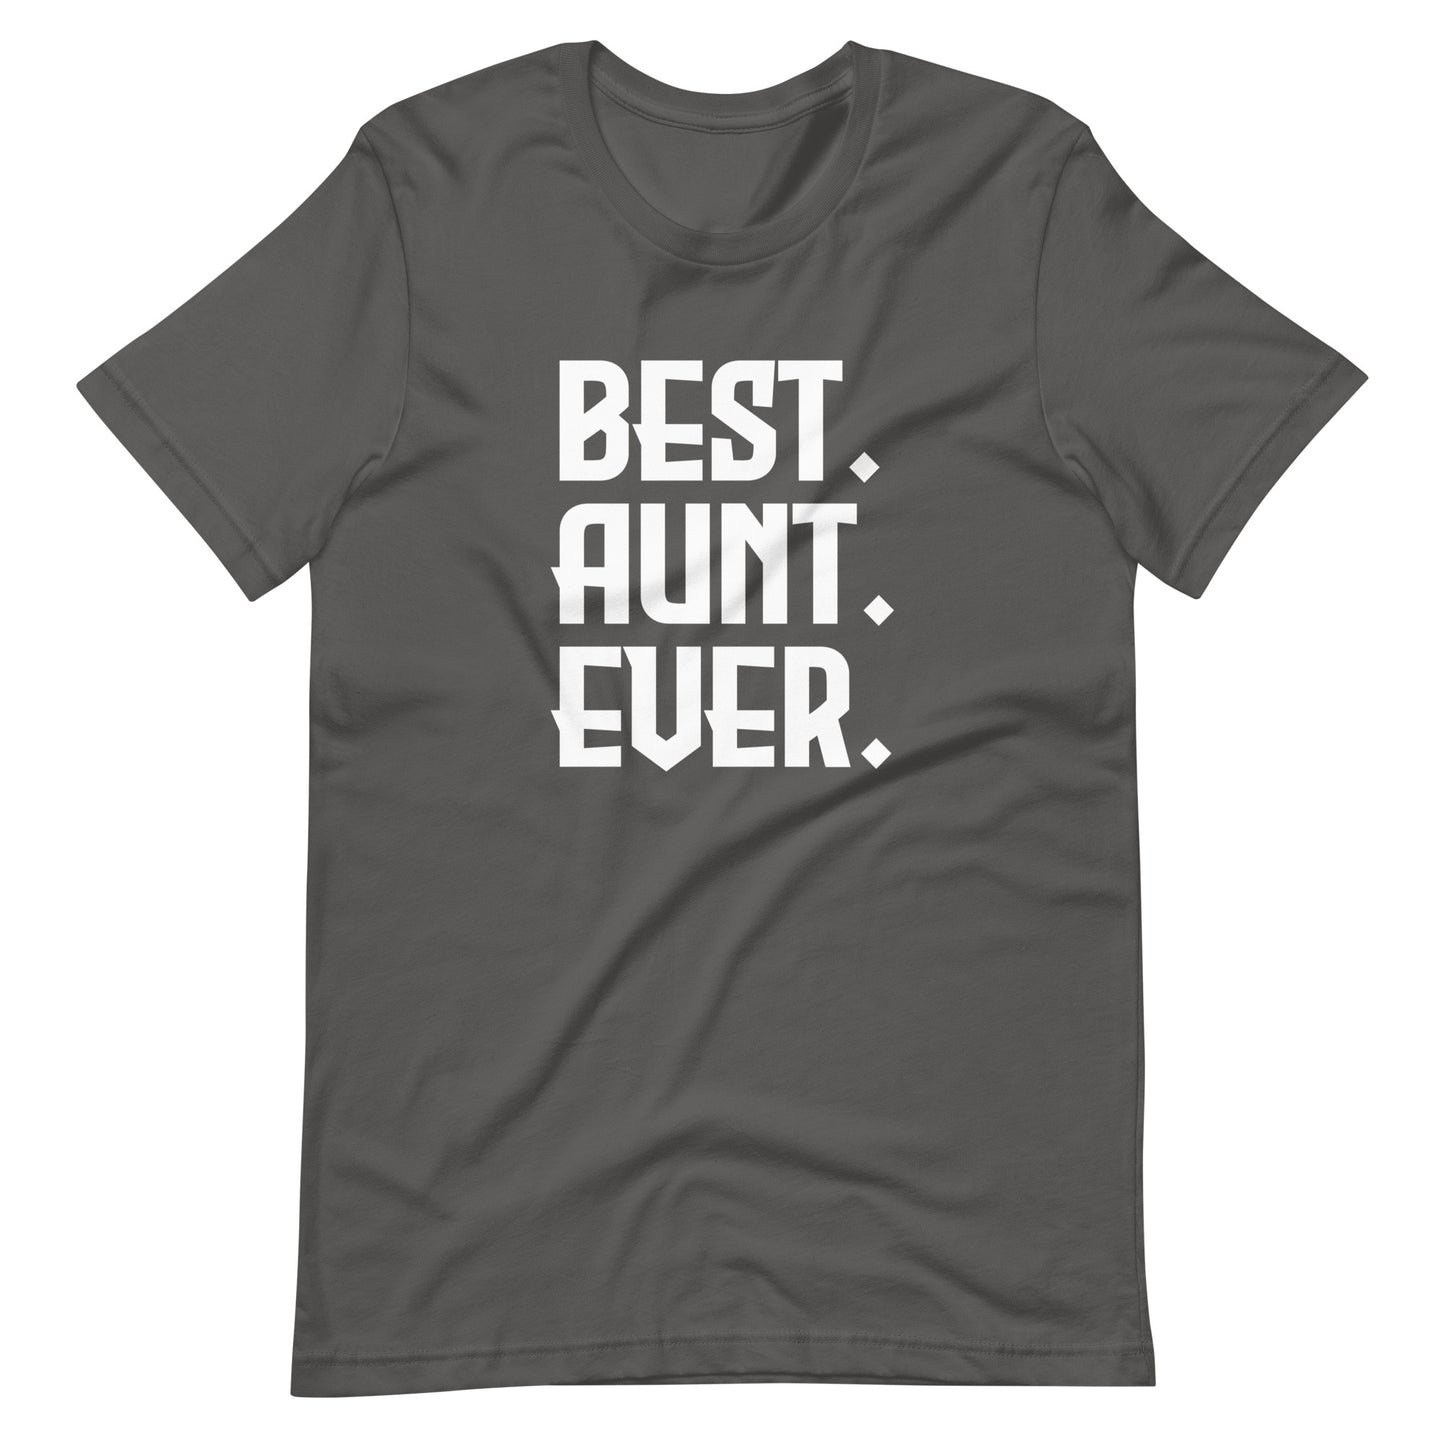 Best. Aunt. Ever.